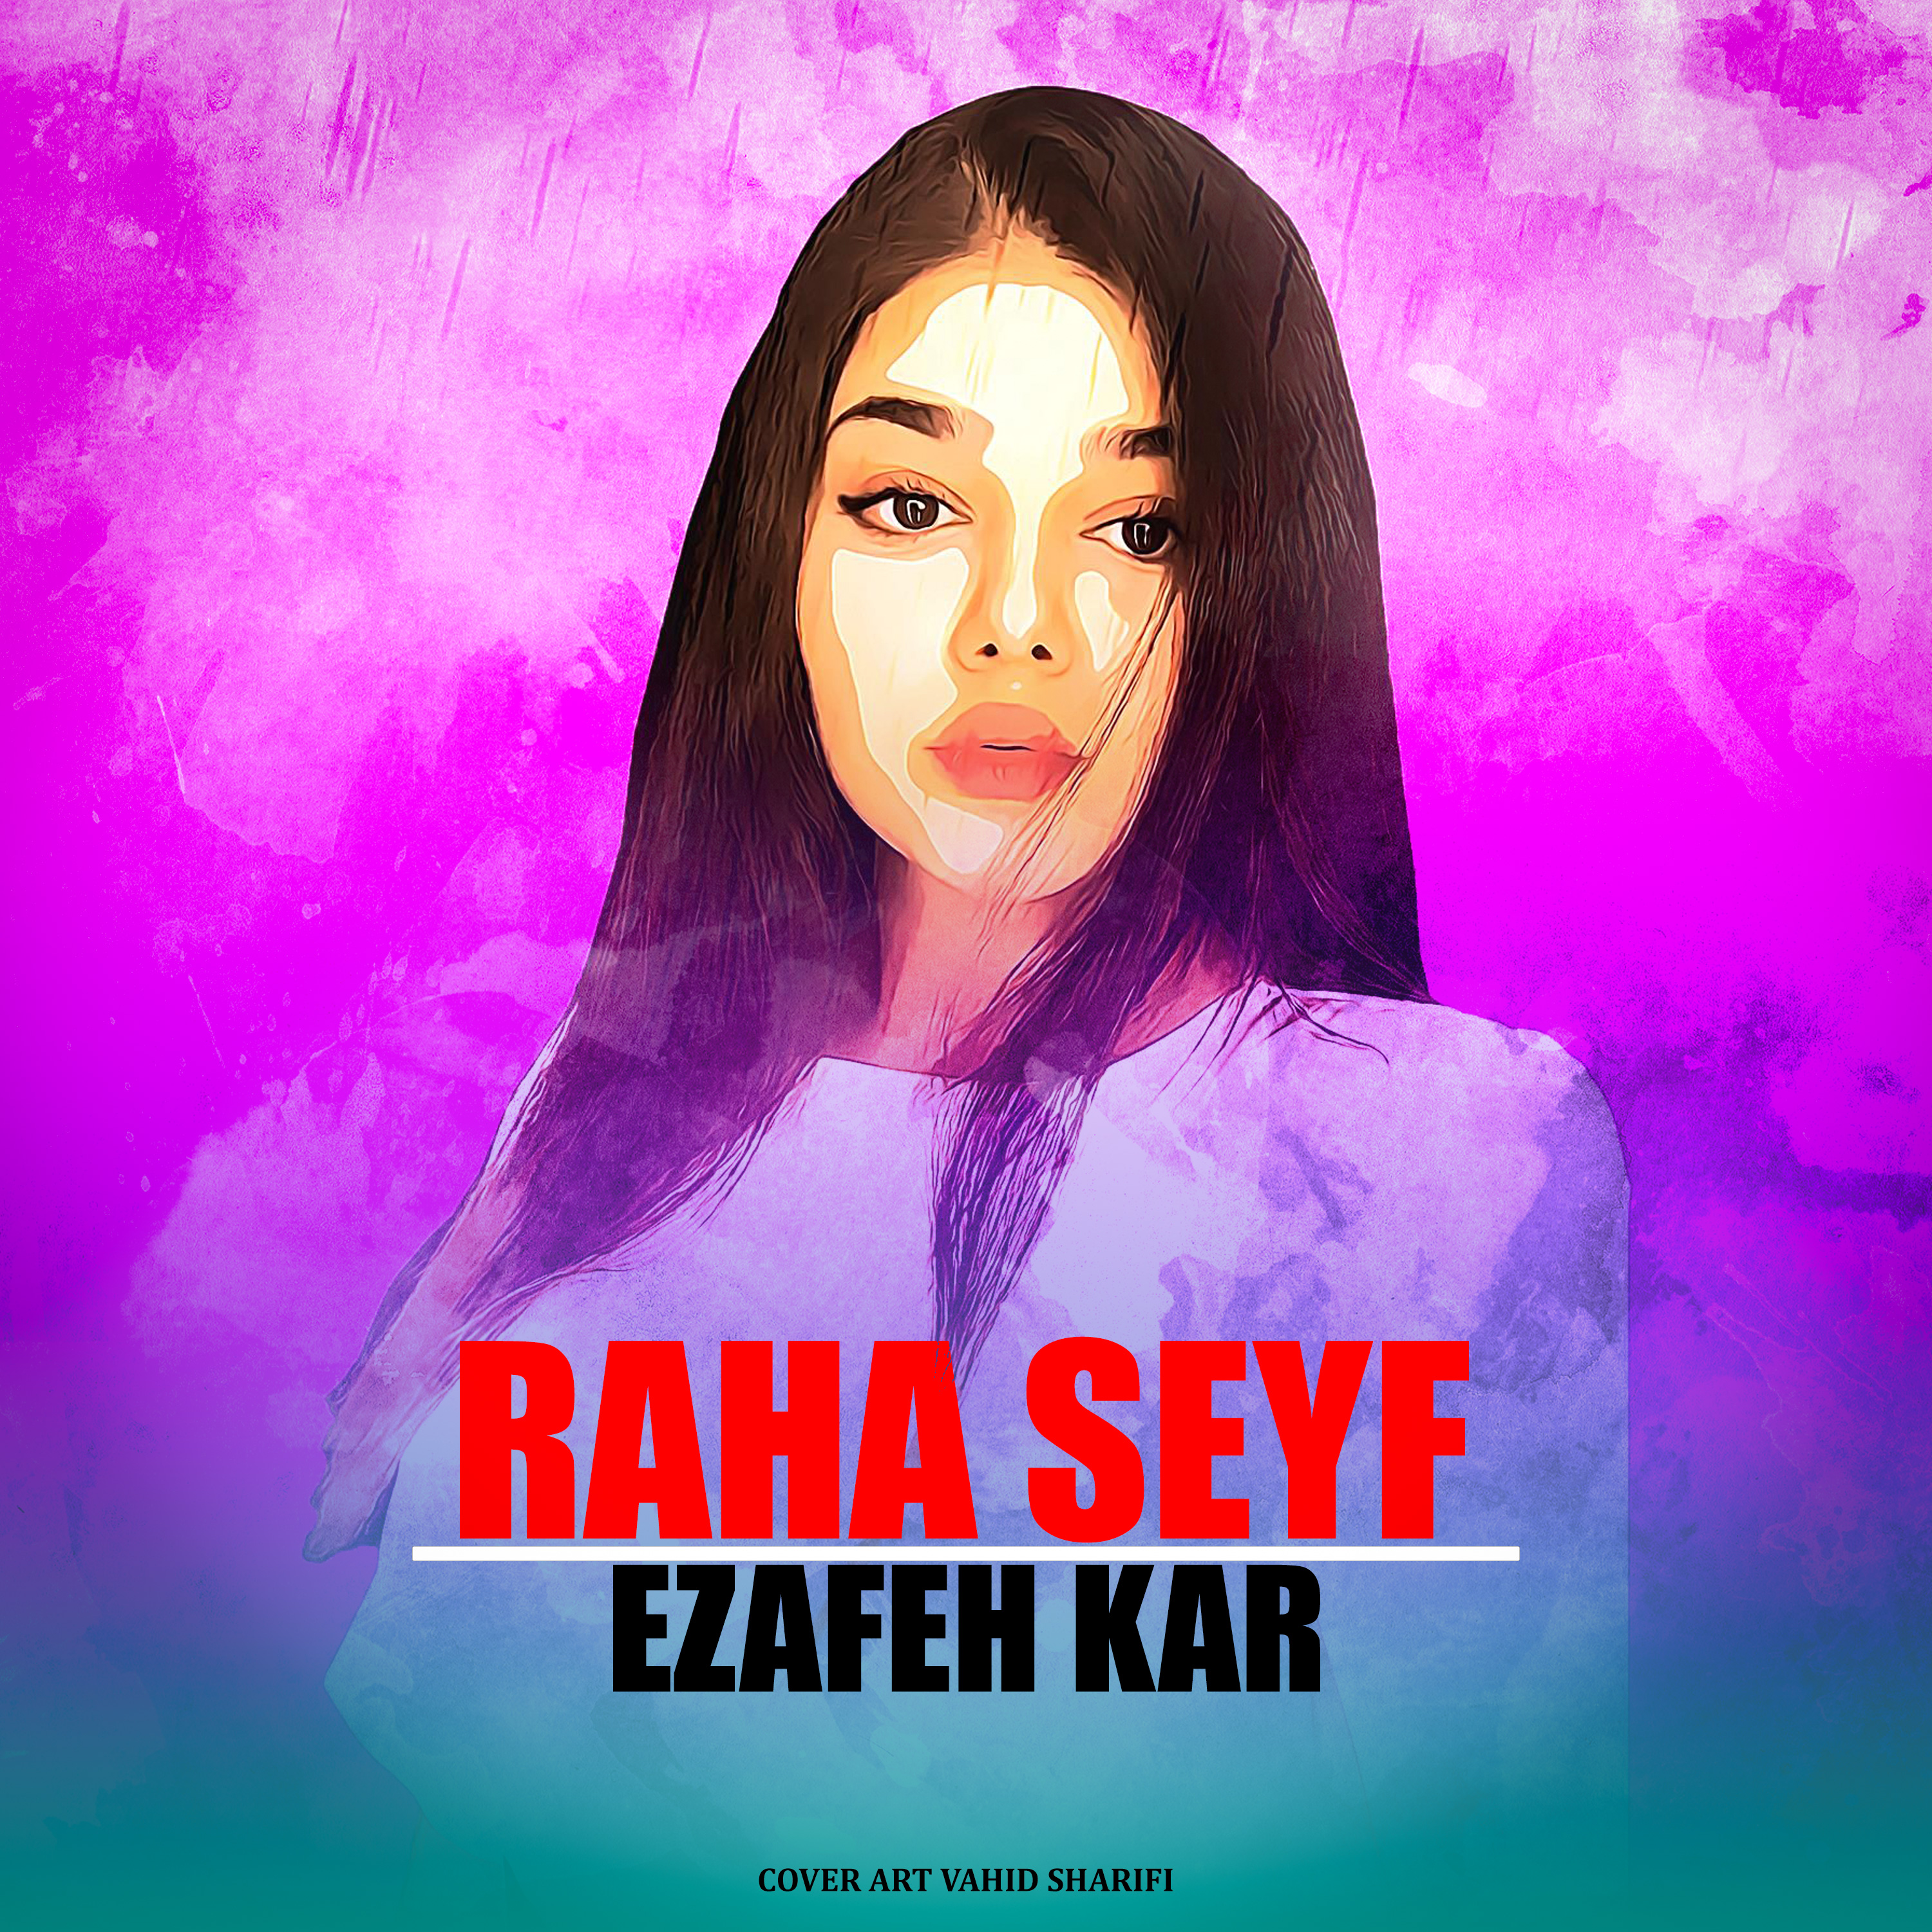  دانلود آهنگ جدید رها سیف - اضافه کار | Download New Music By Raha Seyf - Ezafeh Kar